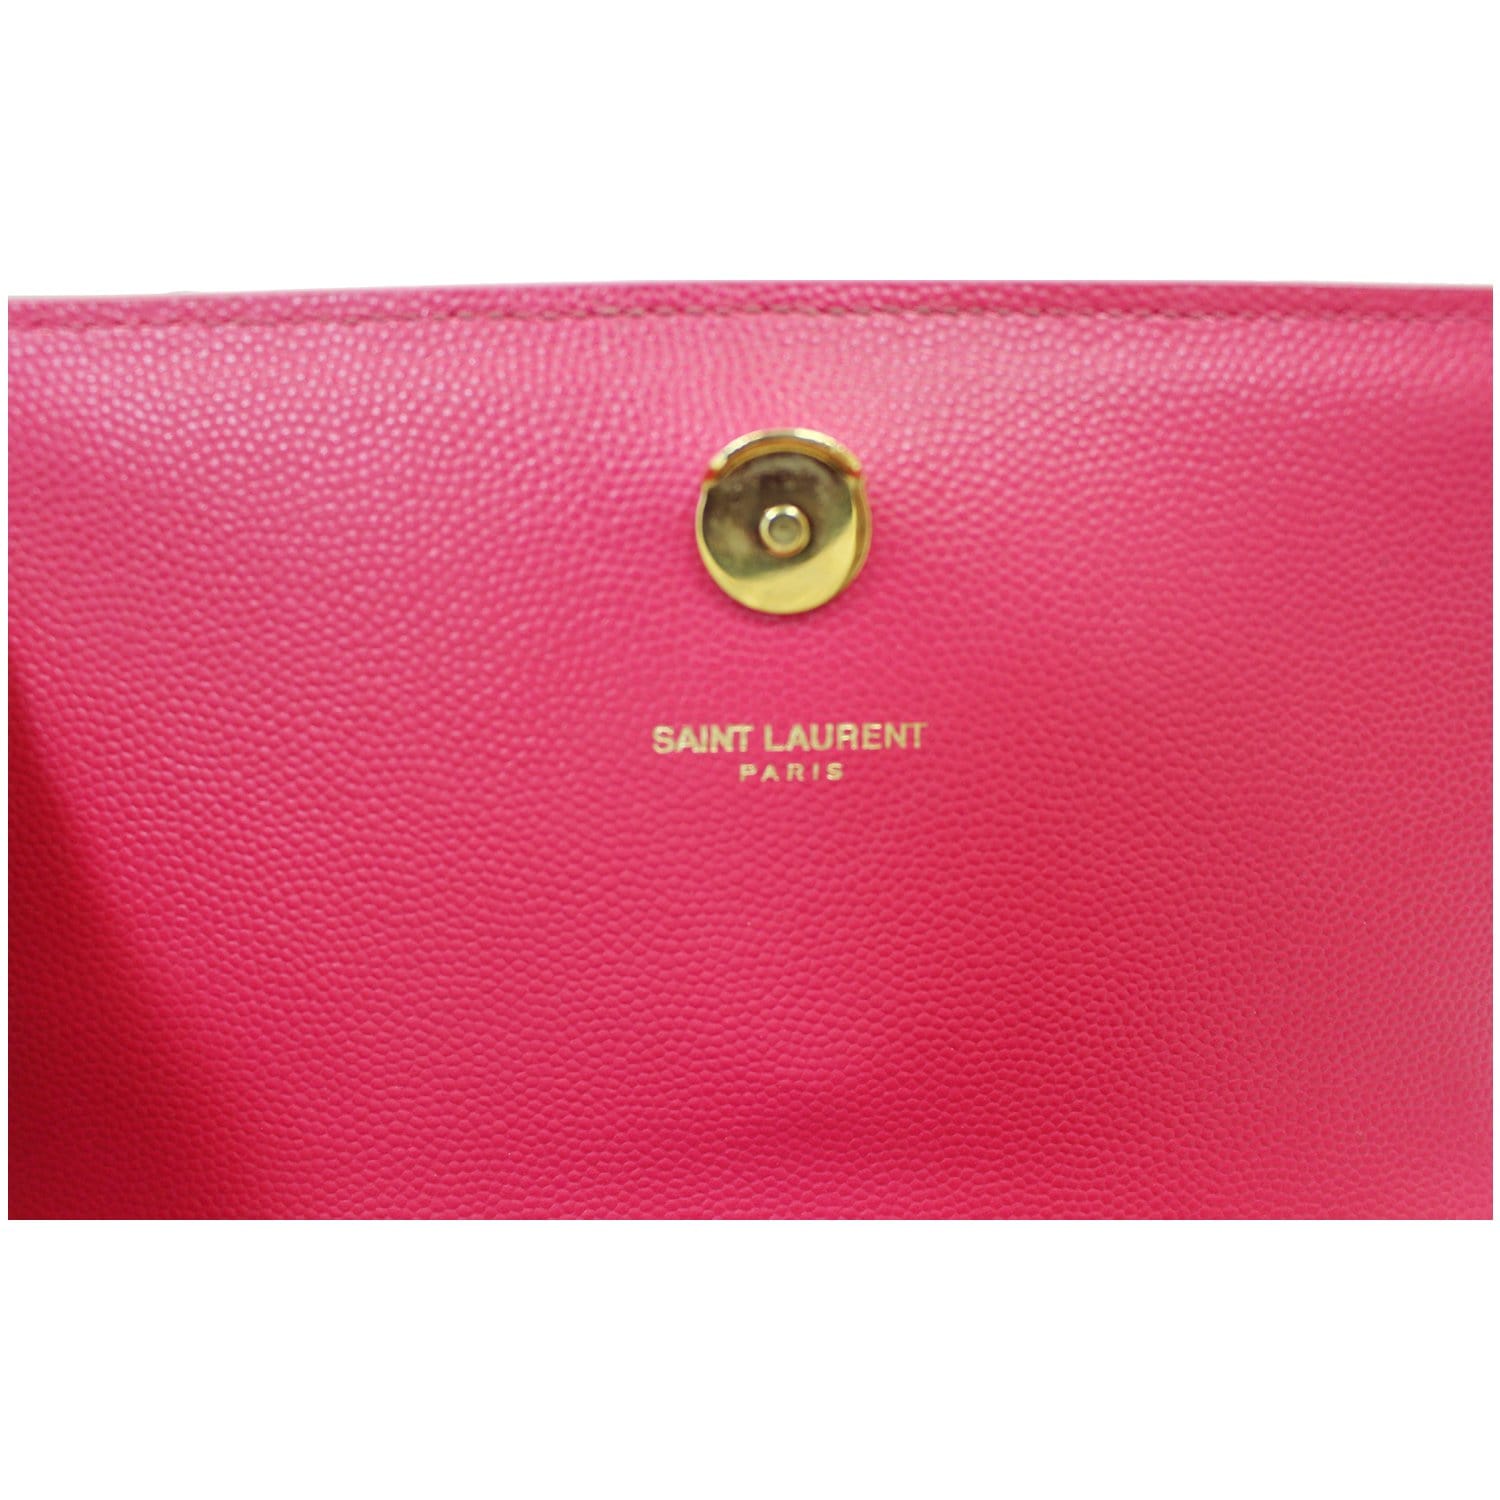 Saint Laurent Pink Leather Small Kate Shoulder Bag Saint Laurent Paris